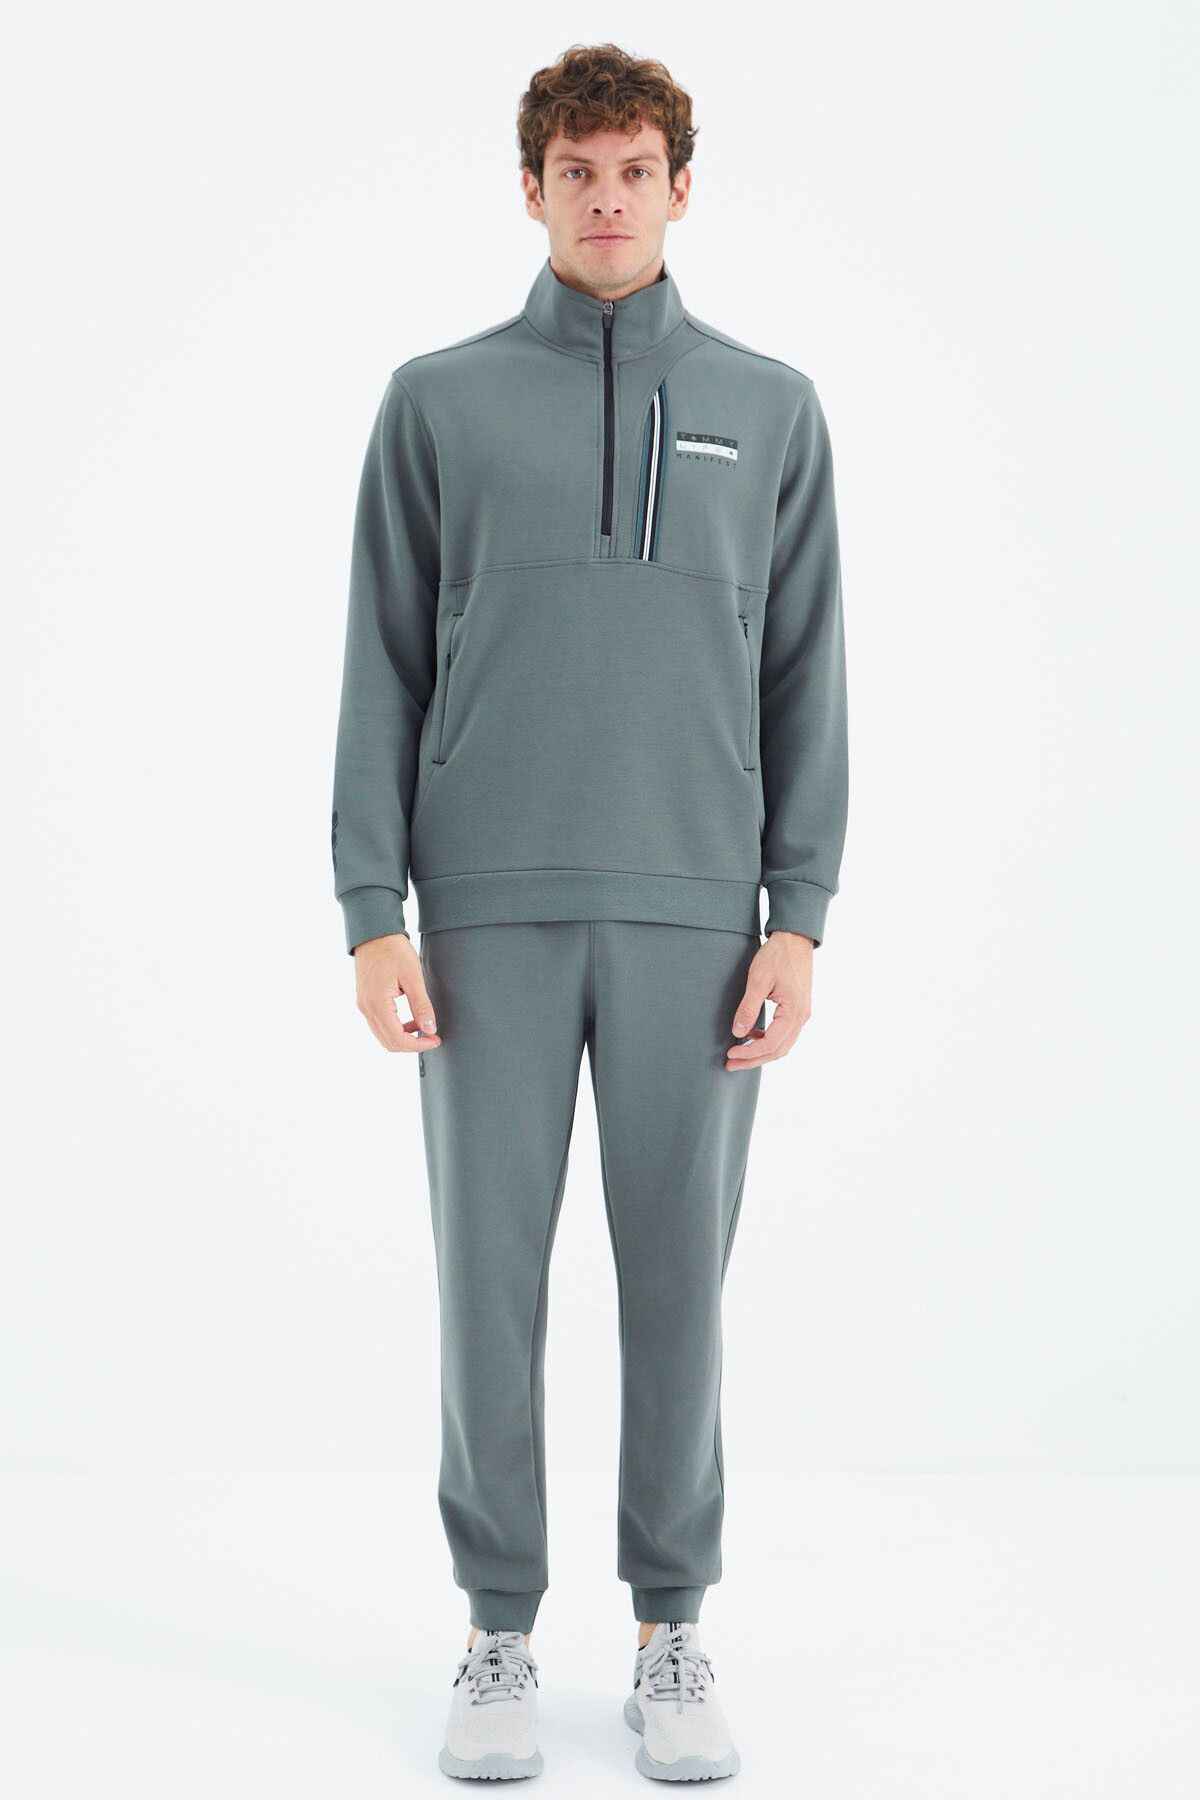 لباس ورزشی ملانژ خاکستری - جیب نیمه زیپ یقه ایستاده مشکی با جزئیات راحت و مناسب - 85221